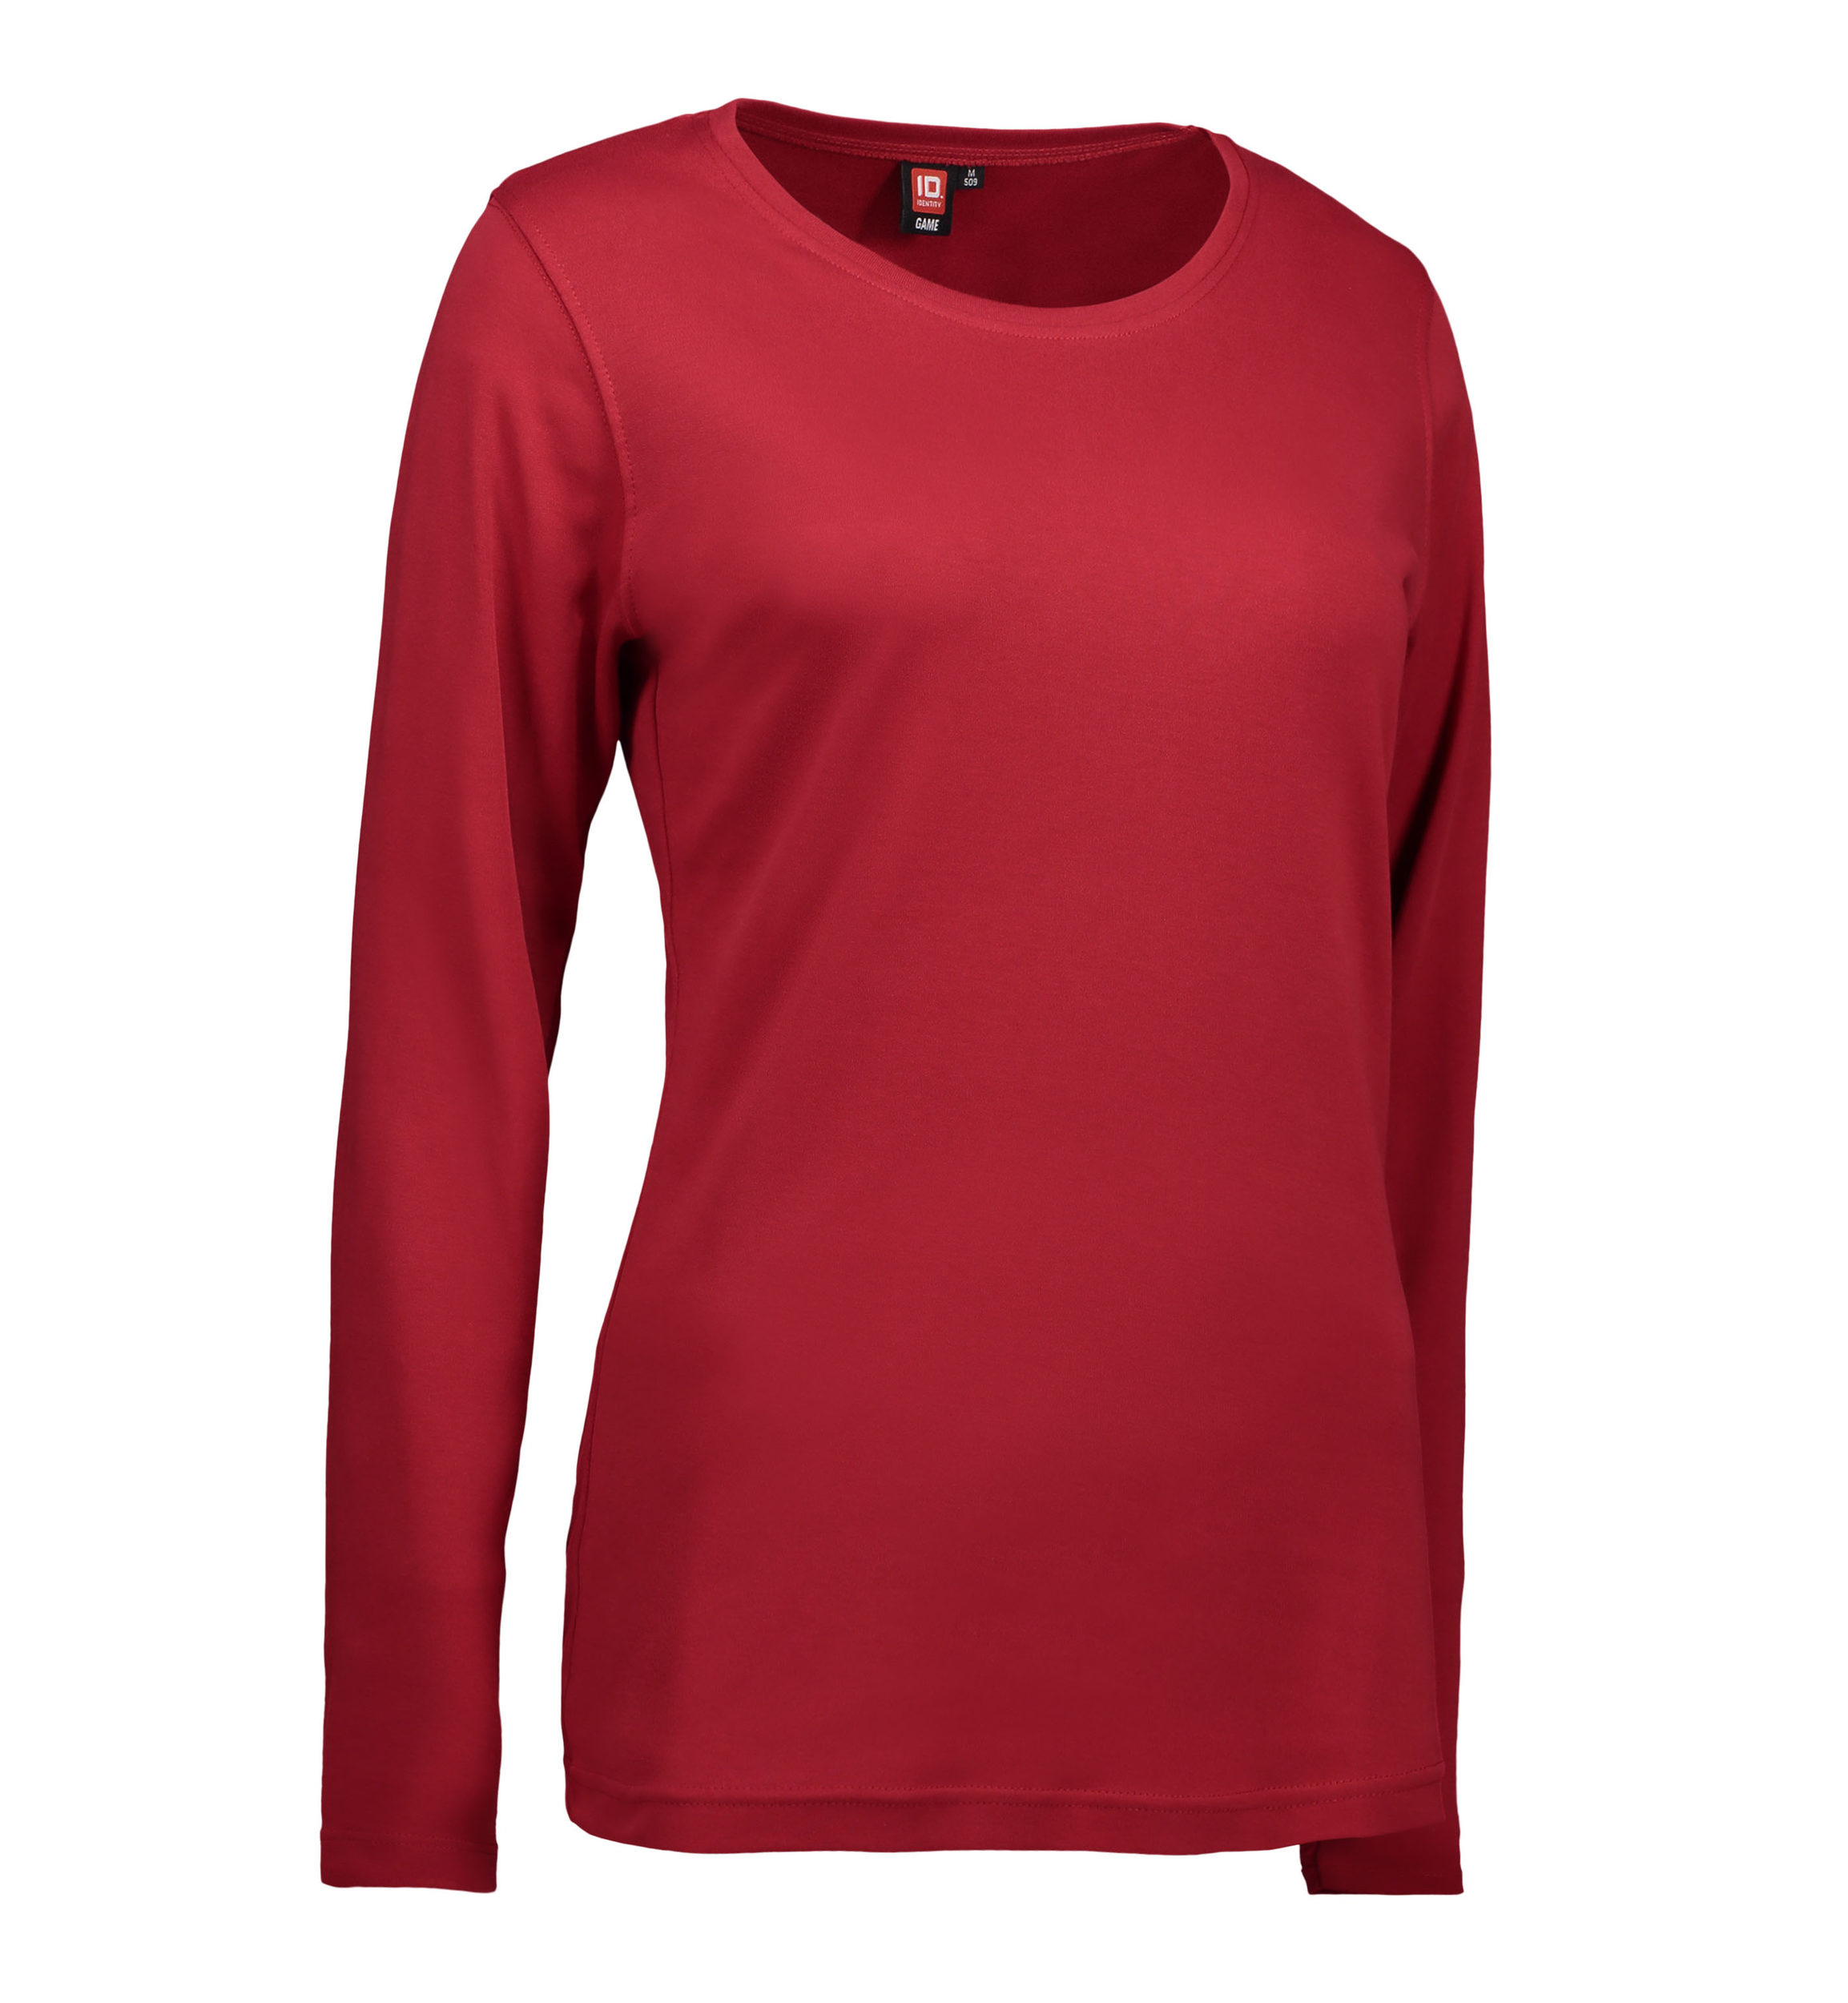 Billede af Langærmet dame t-shirt i rød - 2XL hos Sygeplejebutikken.dk